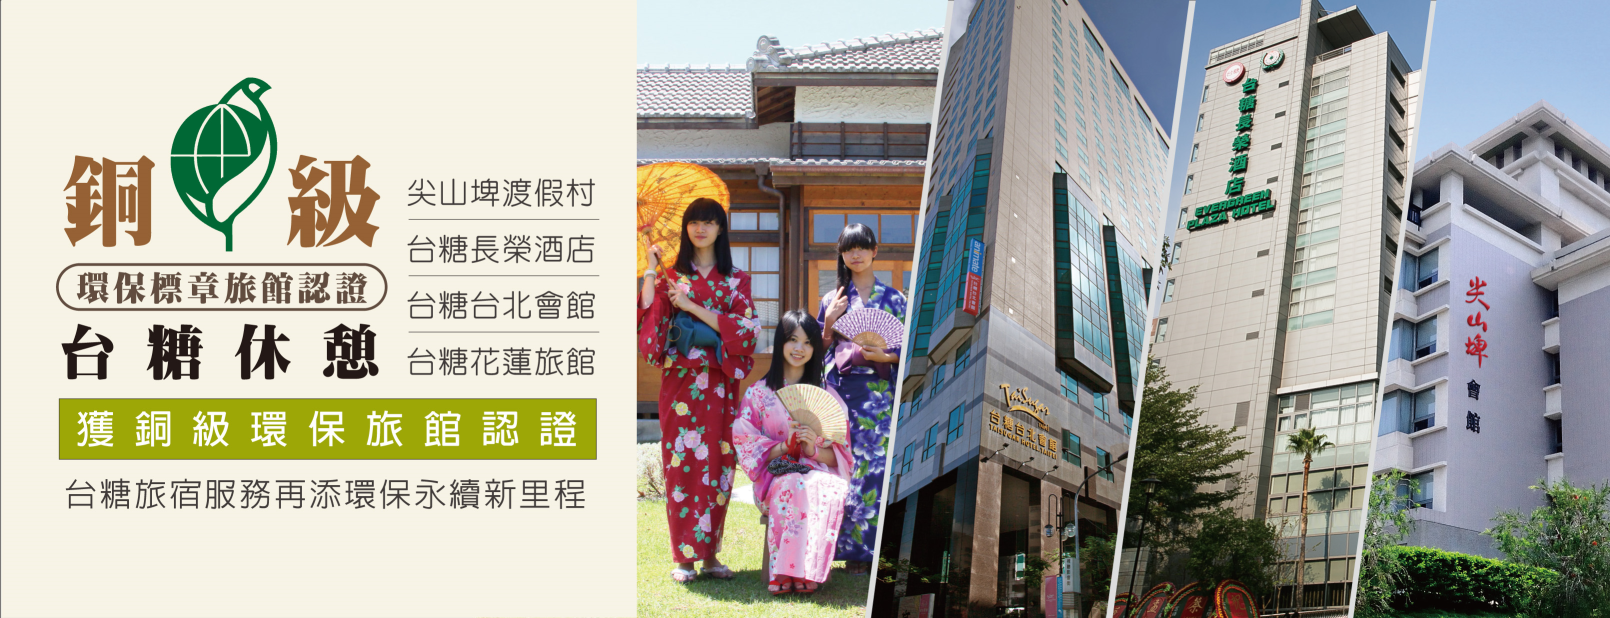 台糖環保旅館再+2 旗下台北會館、花蓮旅館獲銅級認證